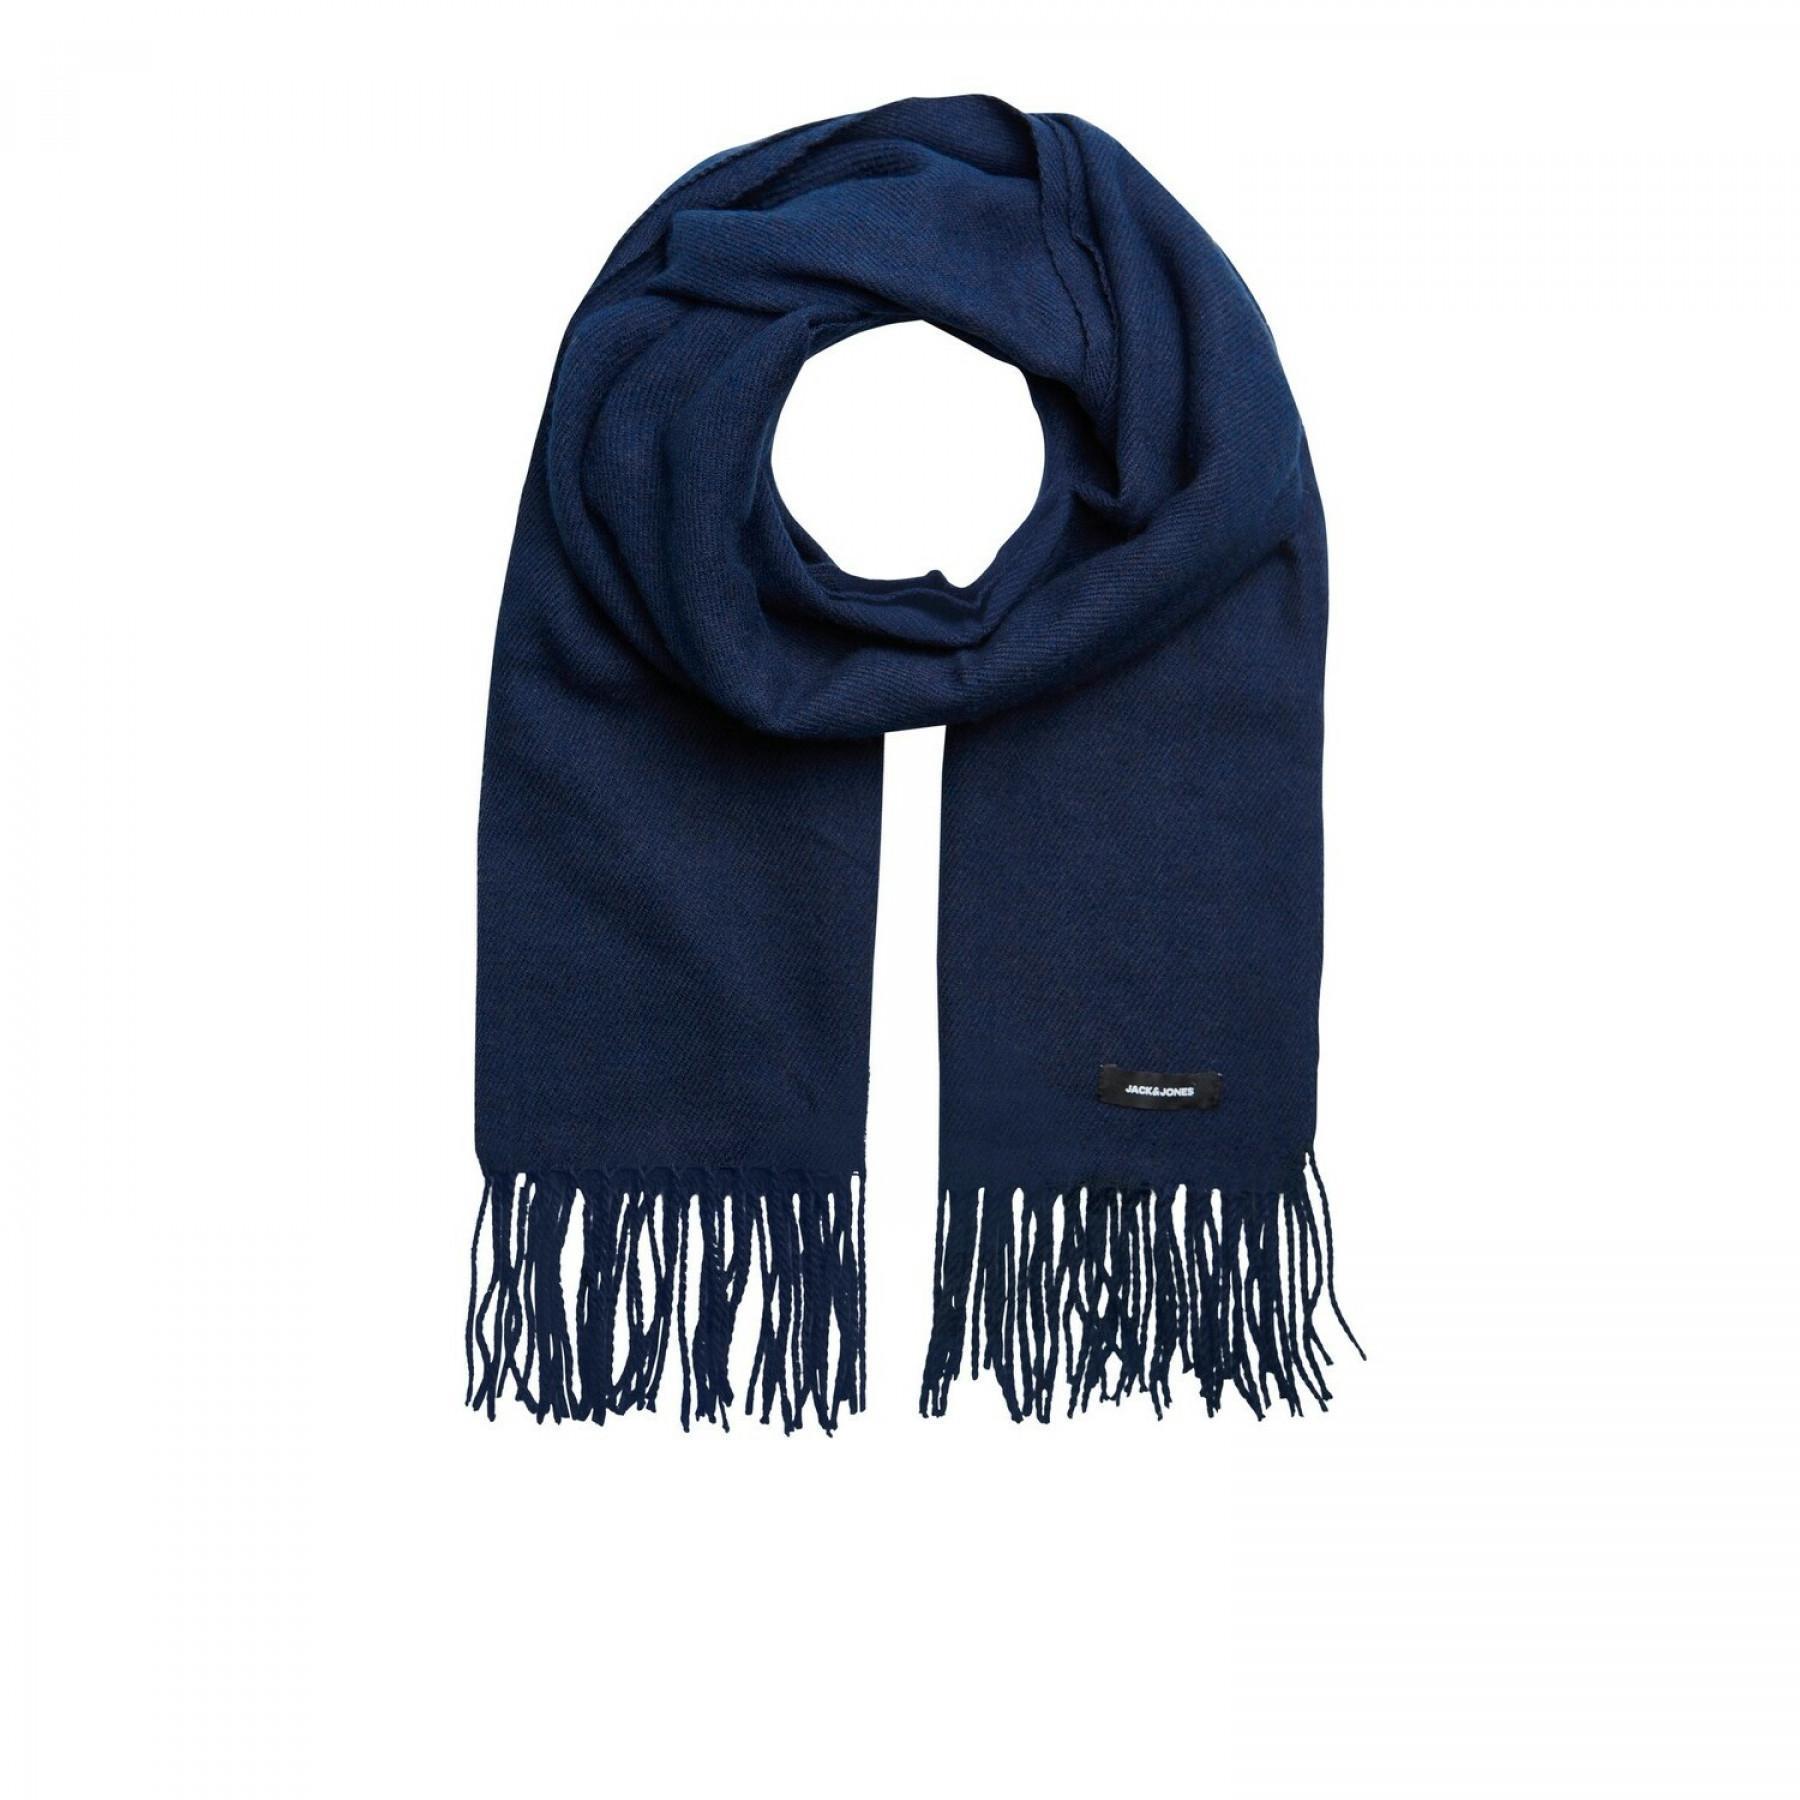 Woven scarf Jack & Jones solid